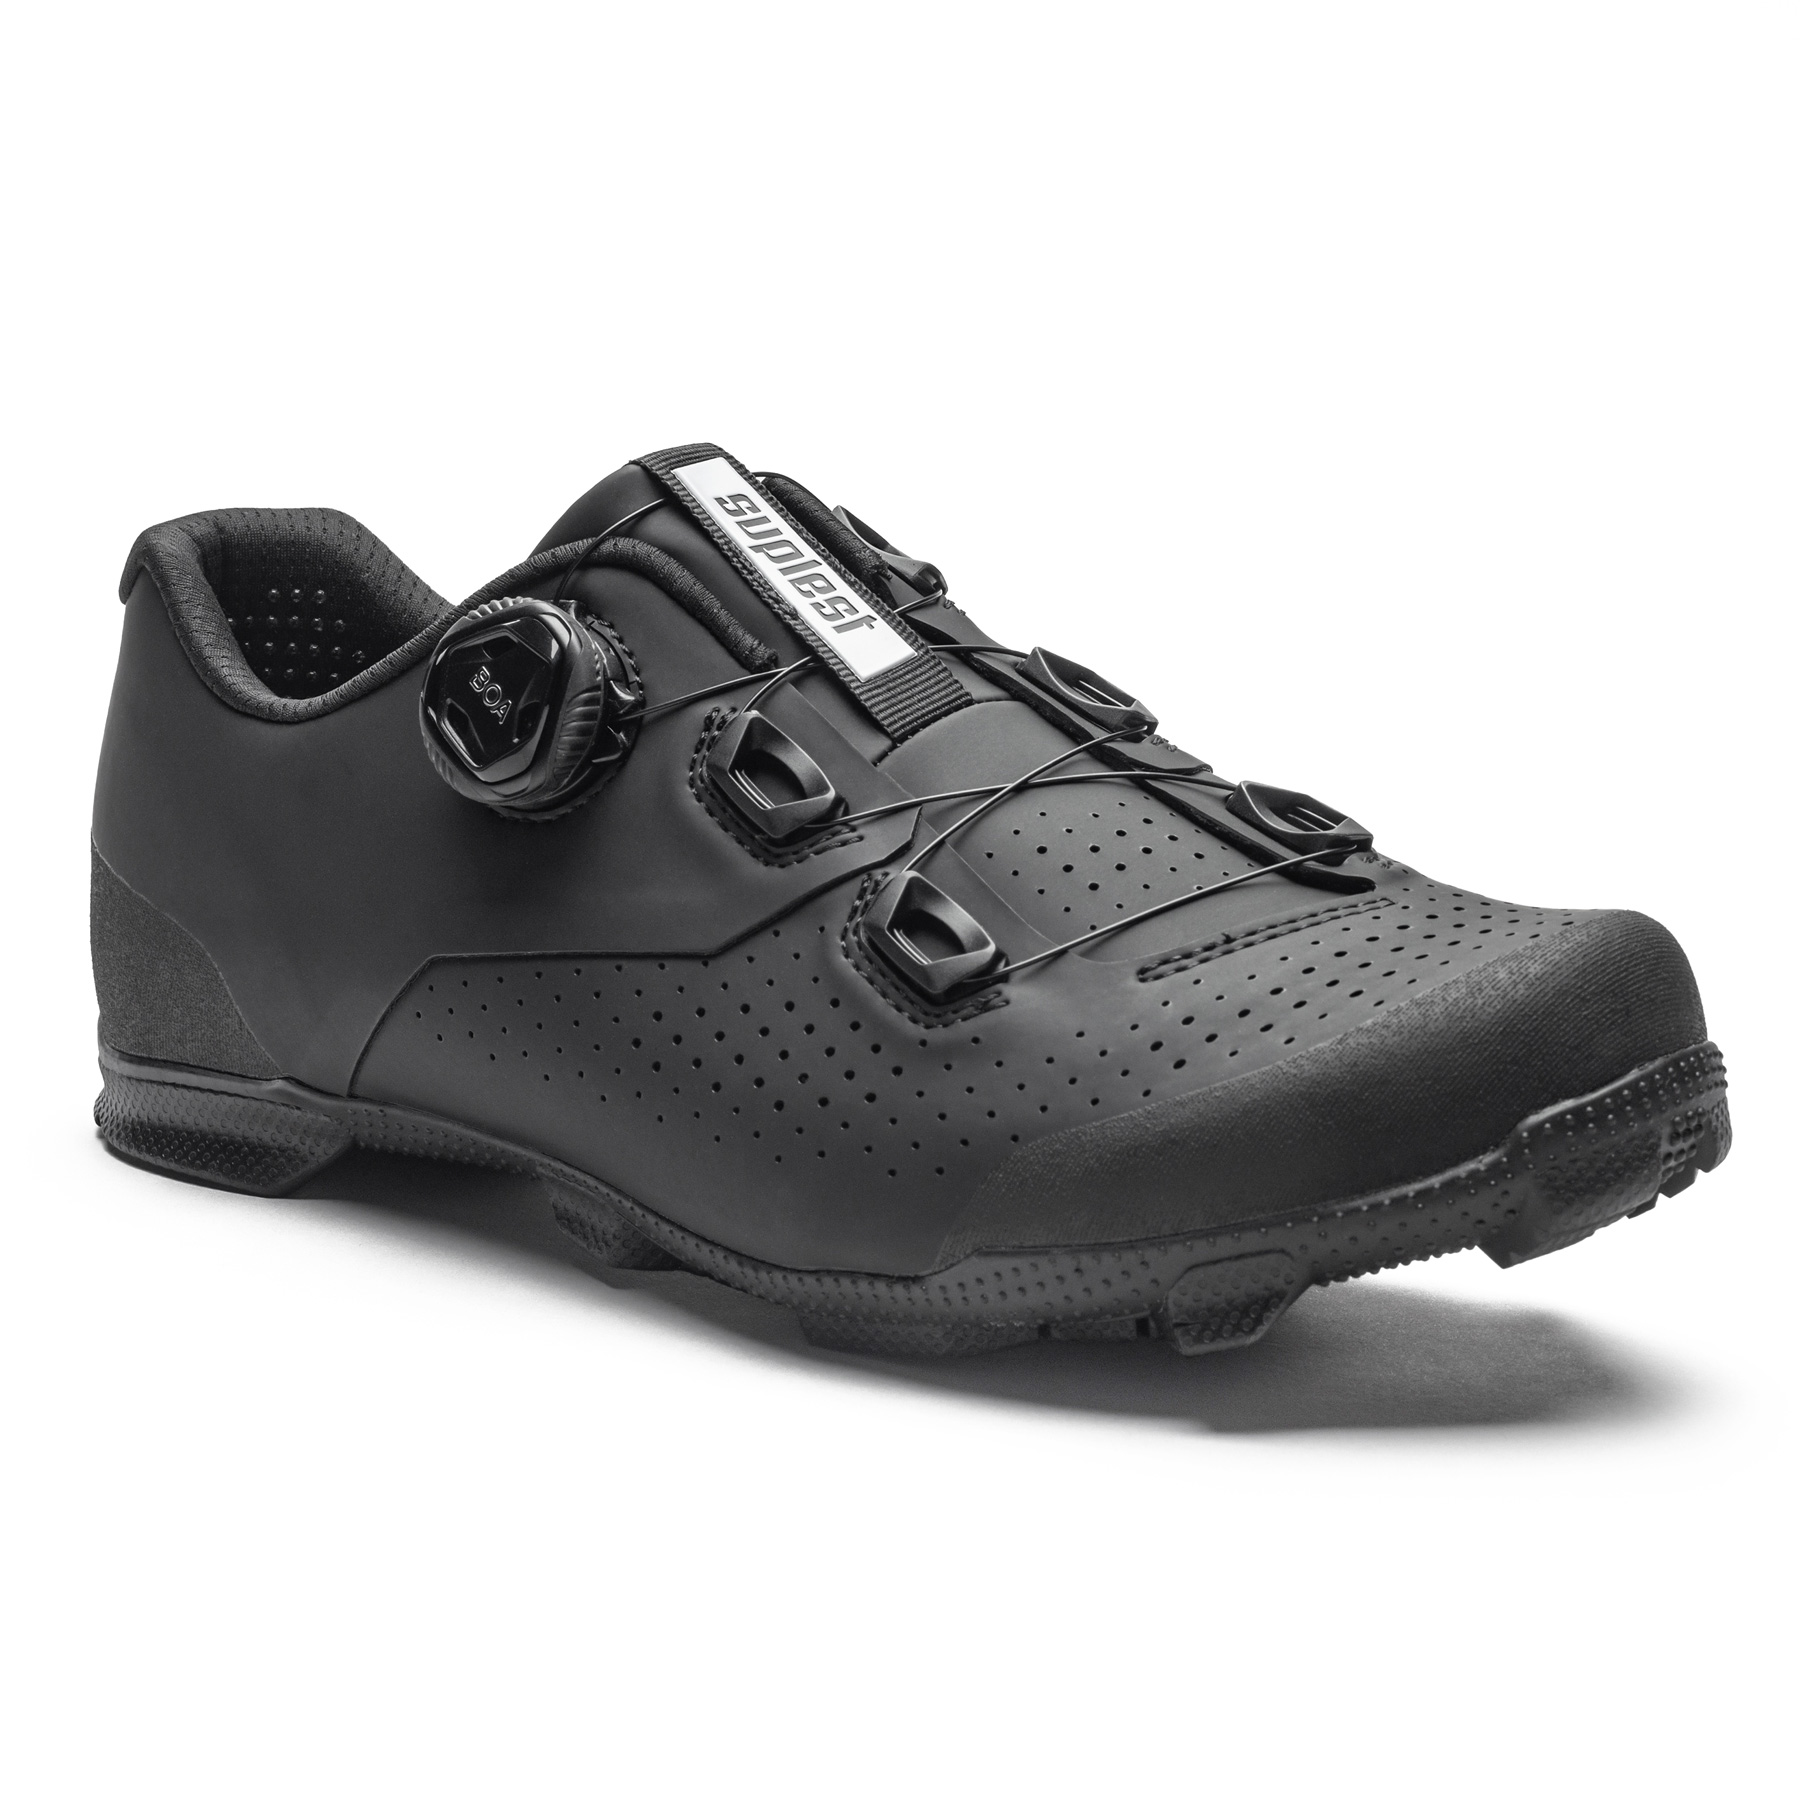 Produktbild von Suplest EDGE+ 2.0 Sport Mountain Series BOA L6 MTB Schuhe Herren - schwarz 02.048.